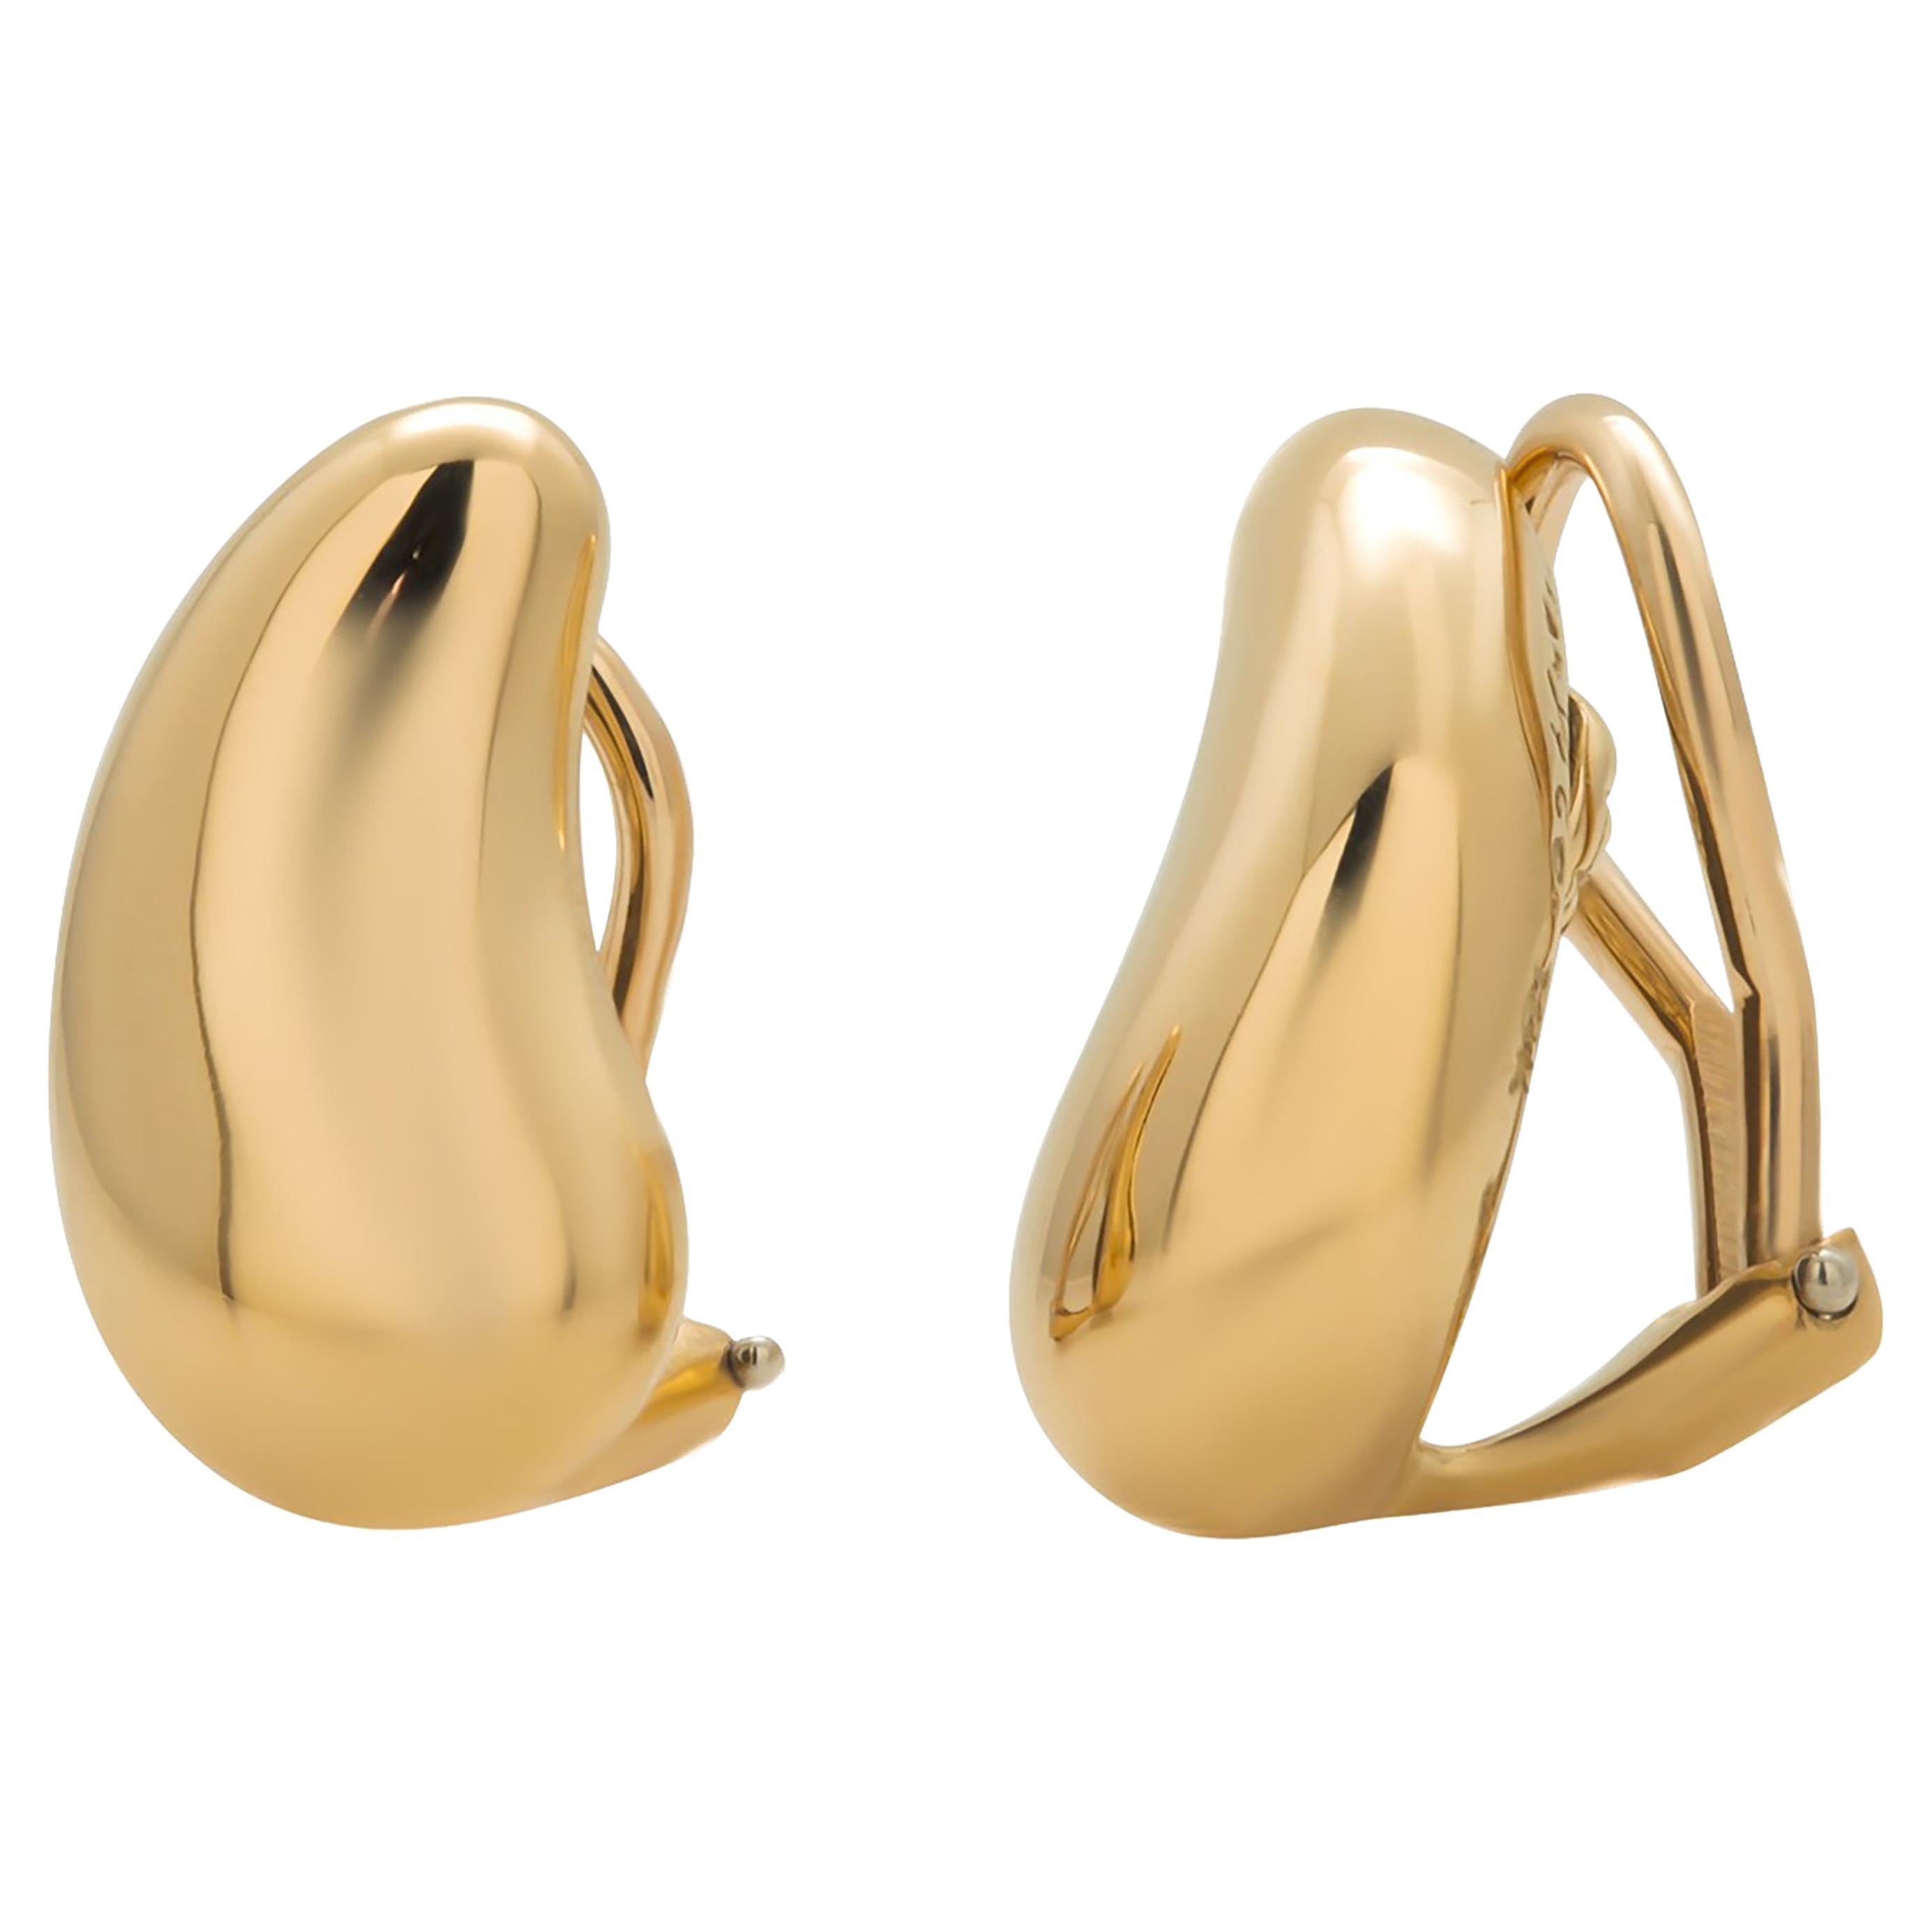 Tiffany Elsa Peretti Bean Design Earrings